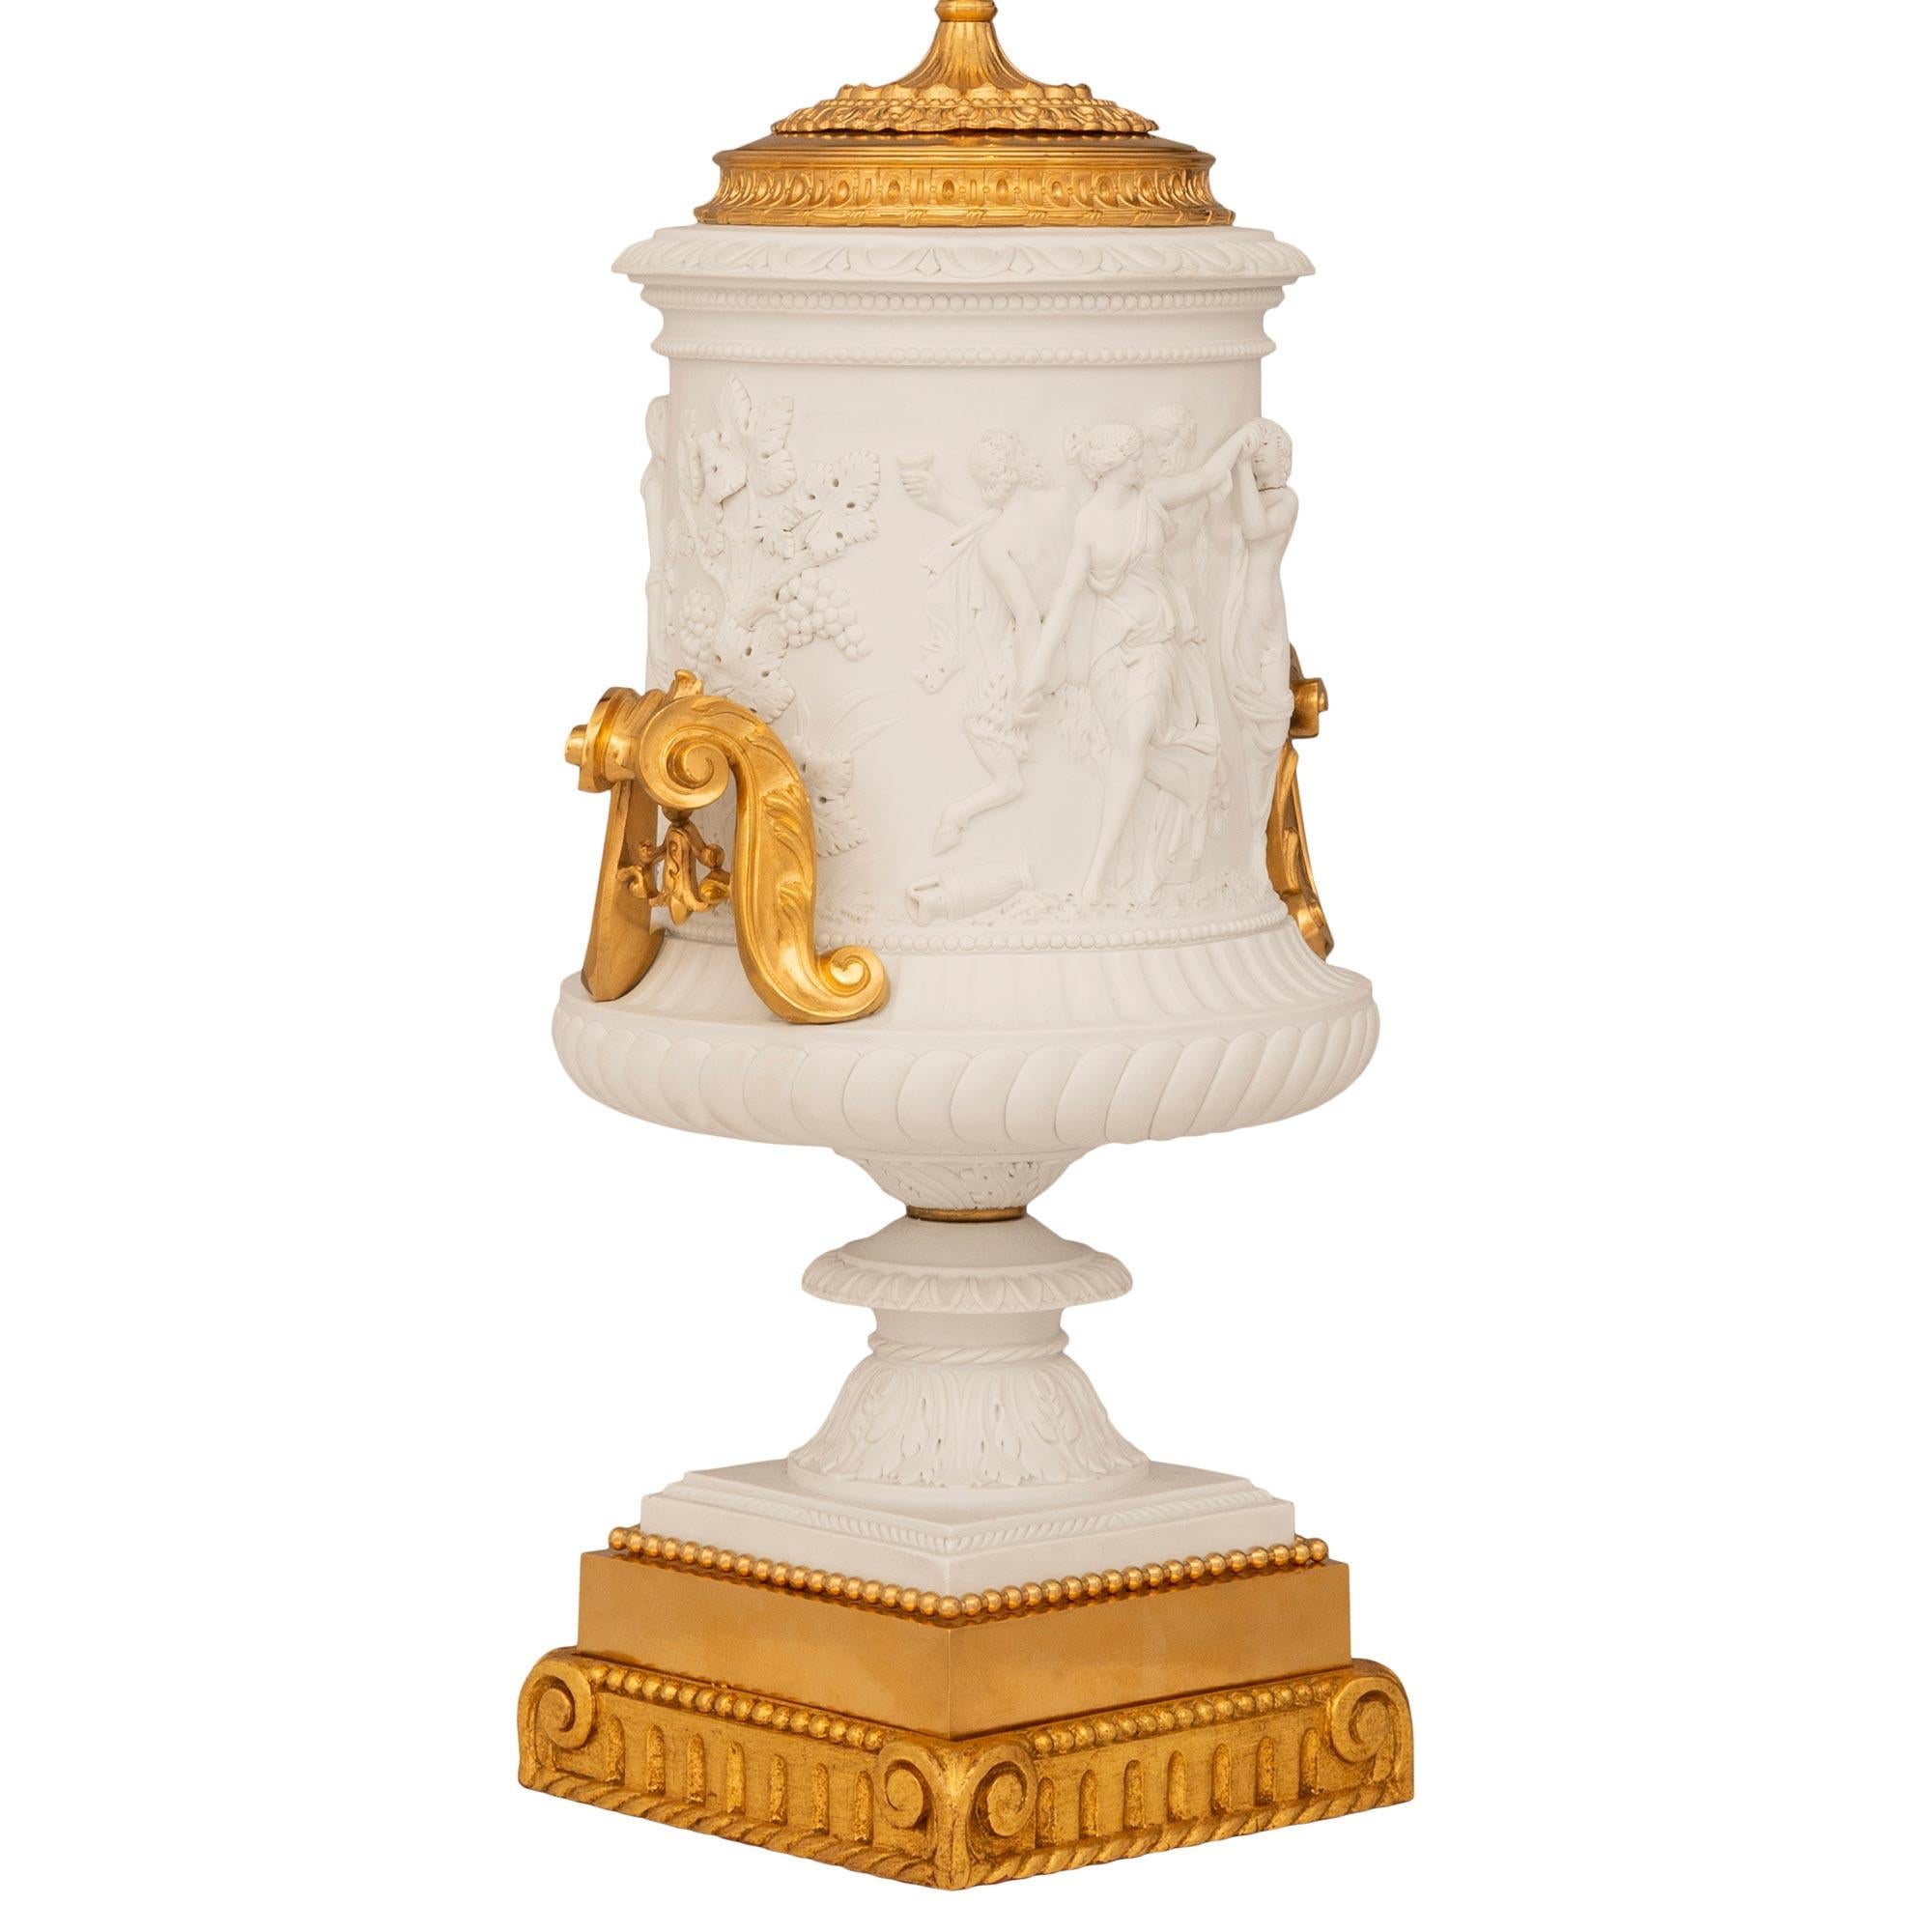 Superbe paire de lampes Renaissance en porcelaine biscuitée, bronze doré et bois doré, attribuée à Sèvres, datant du XIXe siècle. Chaque magnifique lampe est posée sur un piédestal carré cannelé en bois doré, avec un bord inférieur en spirale et des